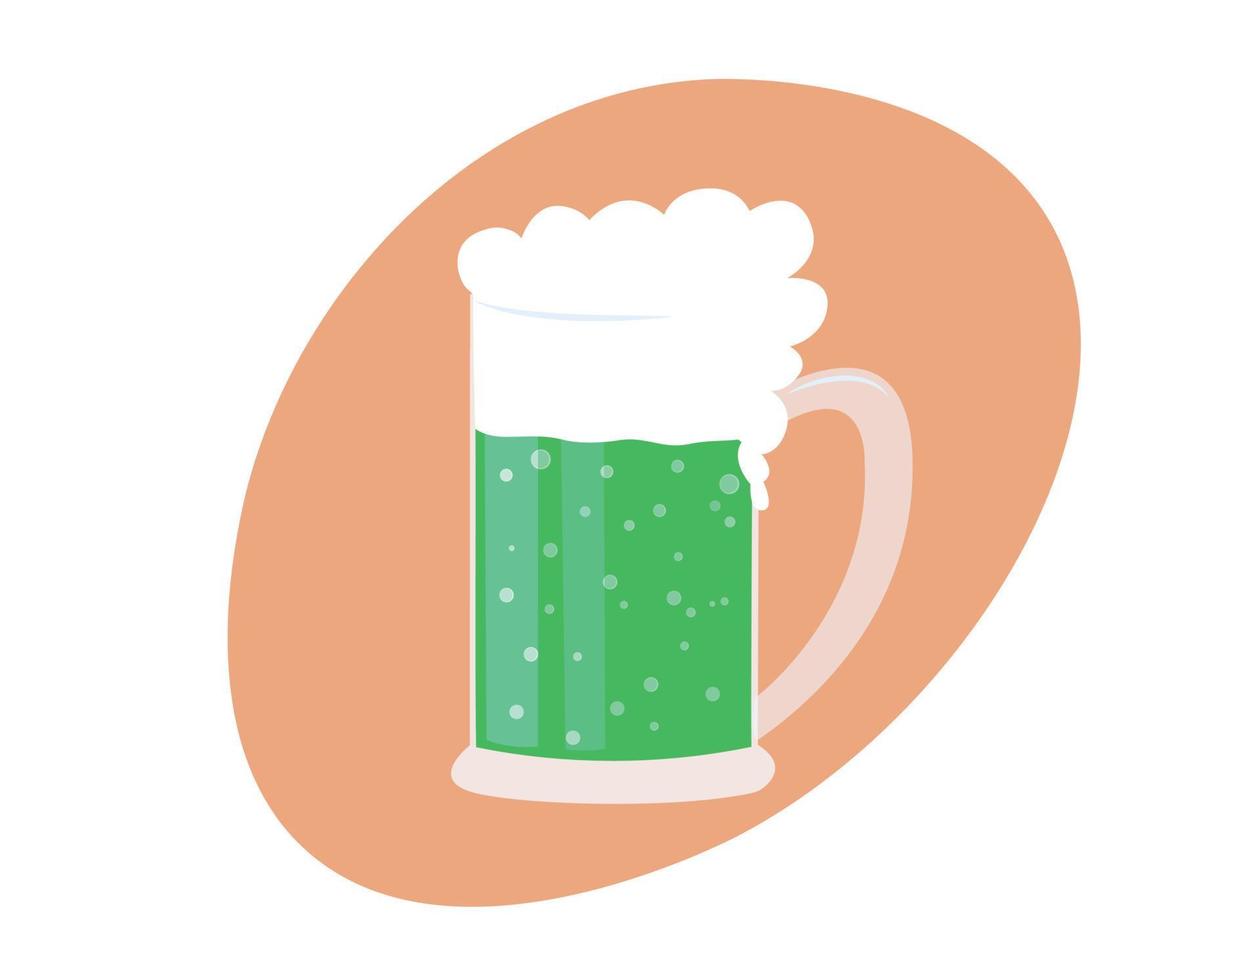 grüner bierkrug isoliert. Saint Patricks Day-Symbol. traditionelles alkoholisches getränk des nationalen irischen patrick-feiertags. flache vektorillustration vektor